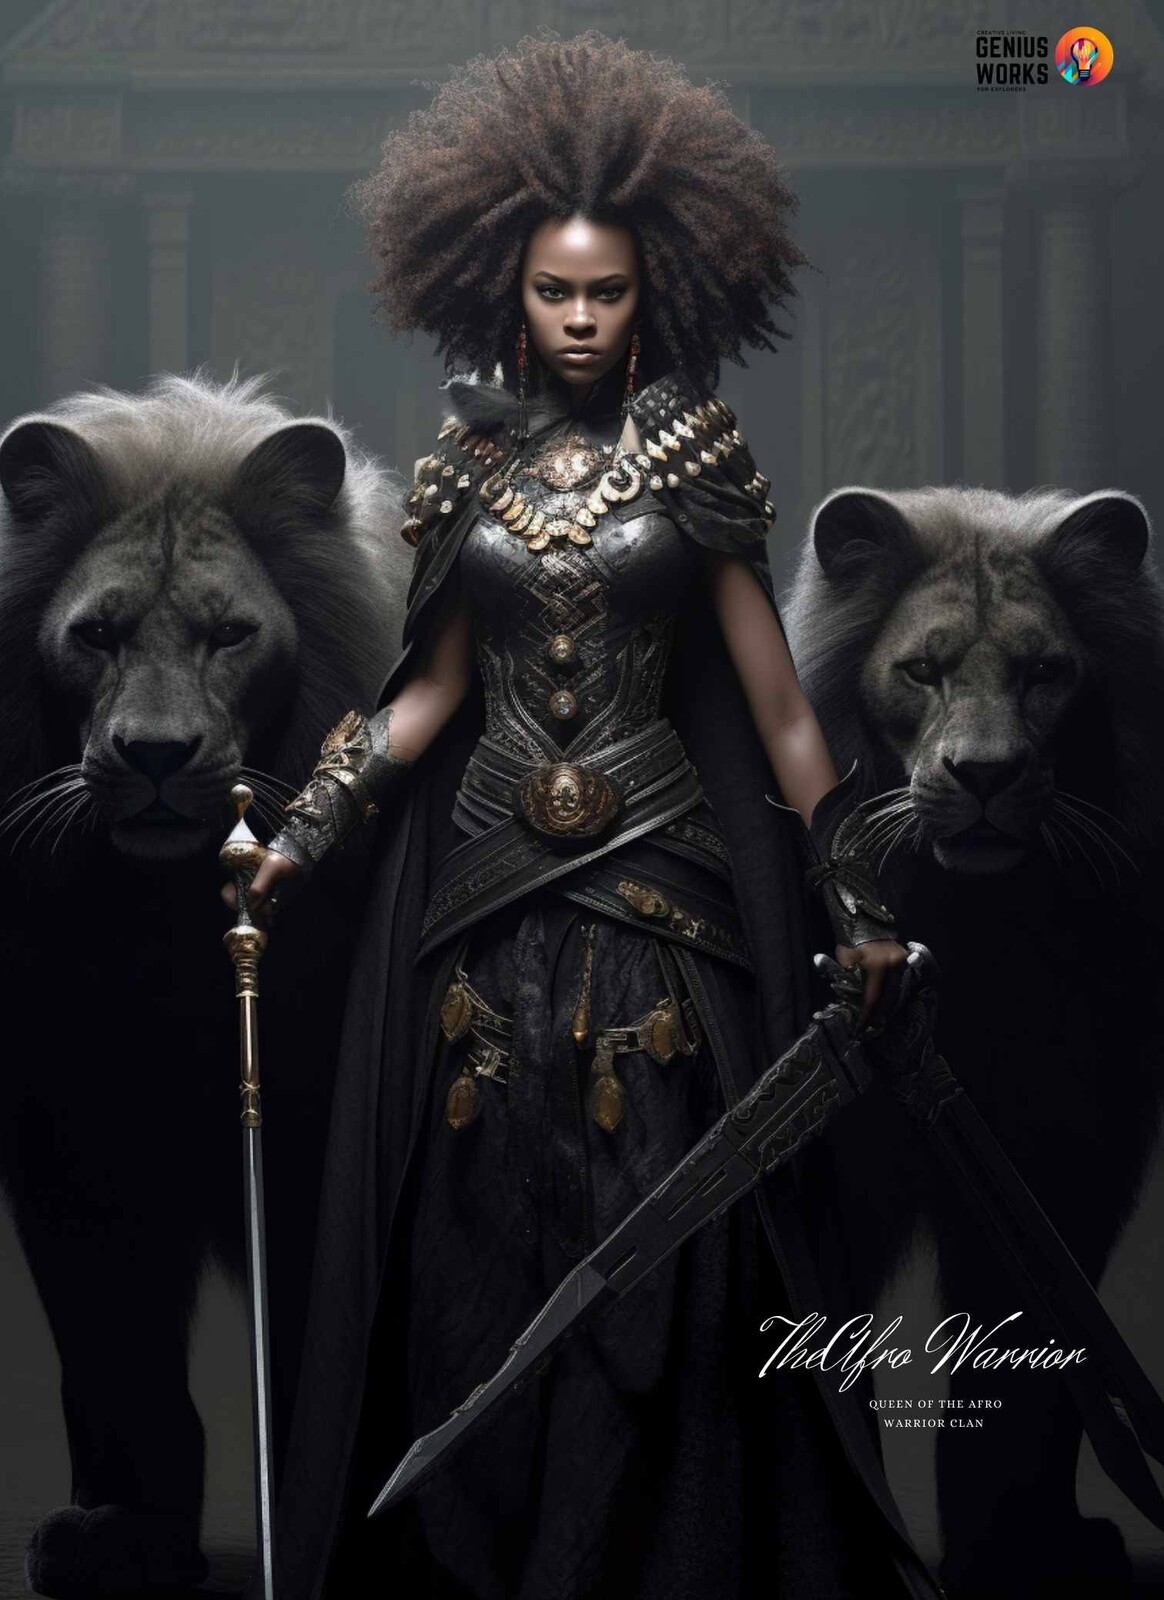 The Afro Warrior Queen